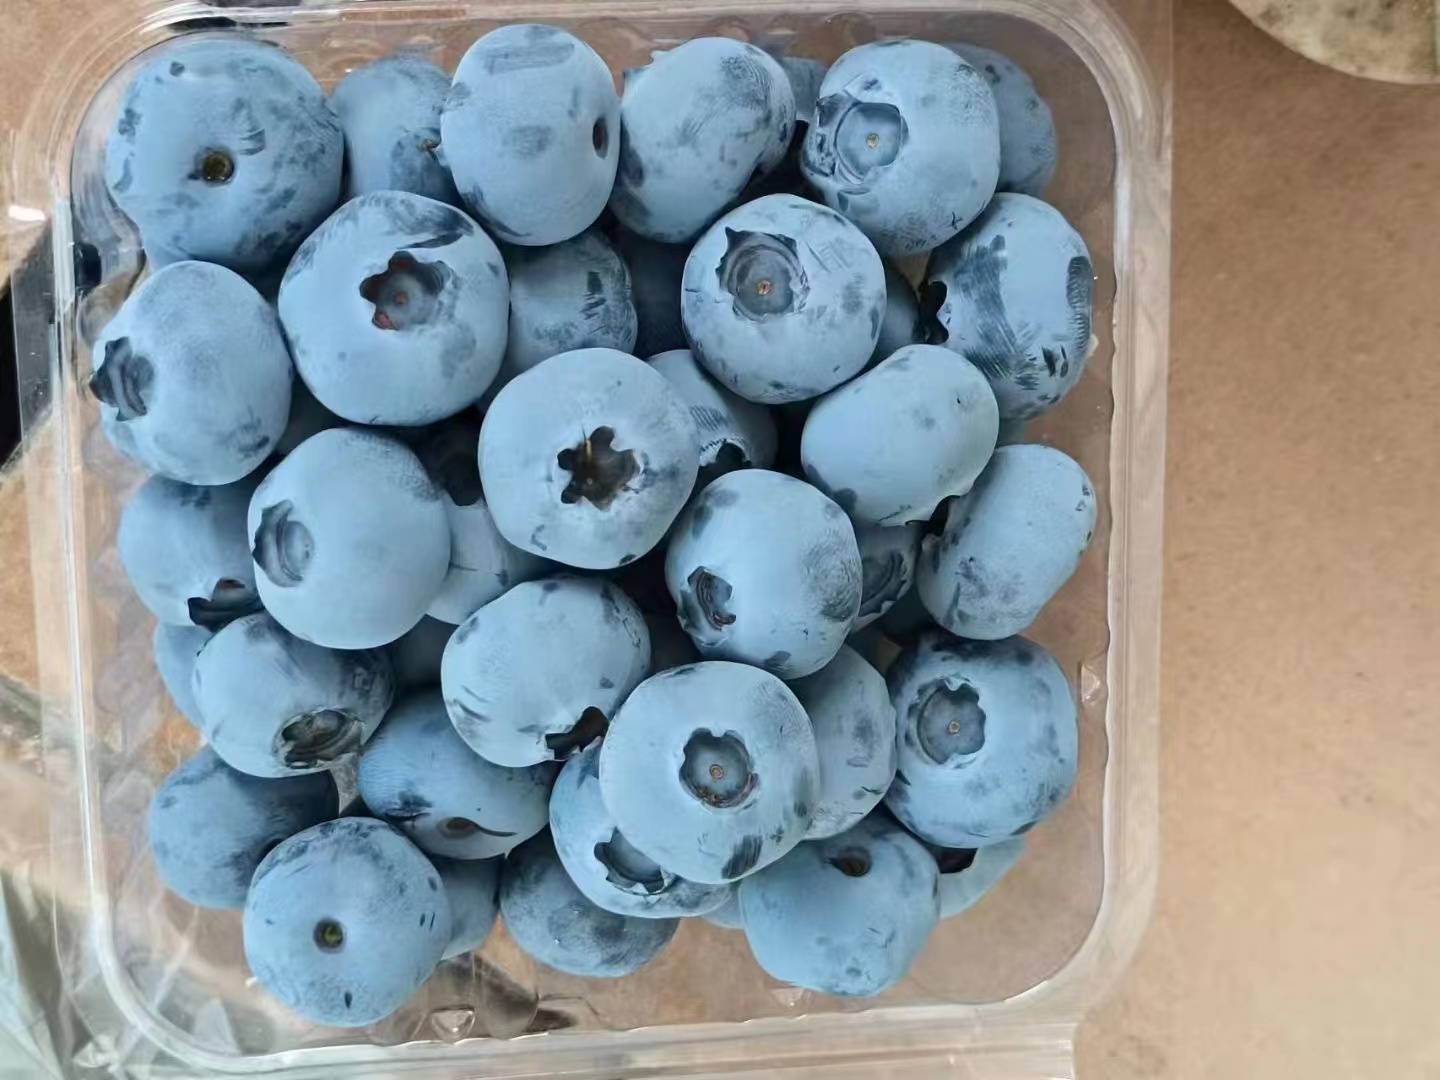 莱克西蓝莓苗适合盆栽还是地栽